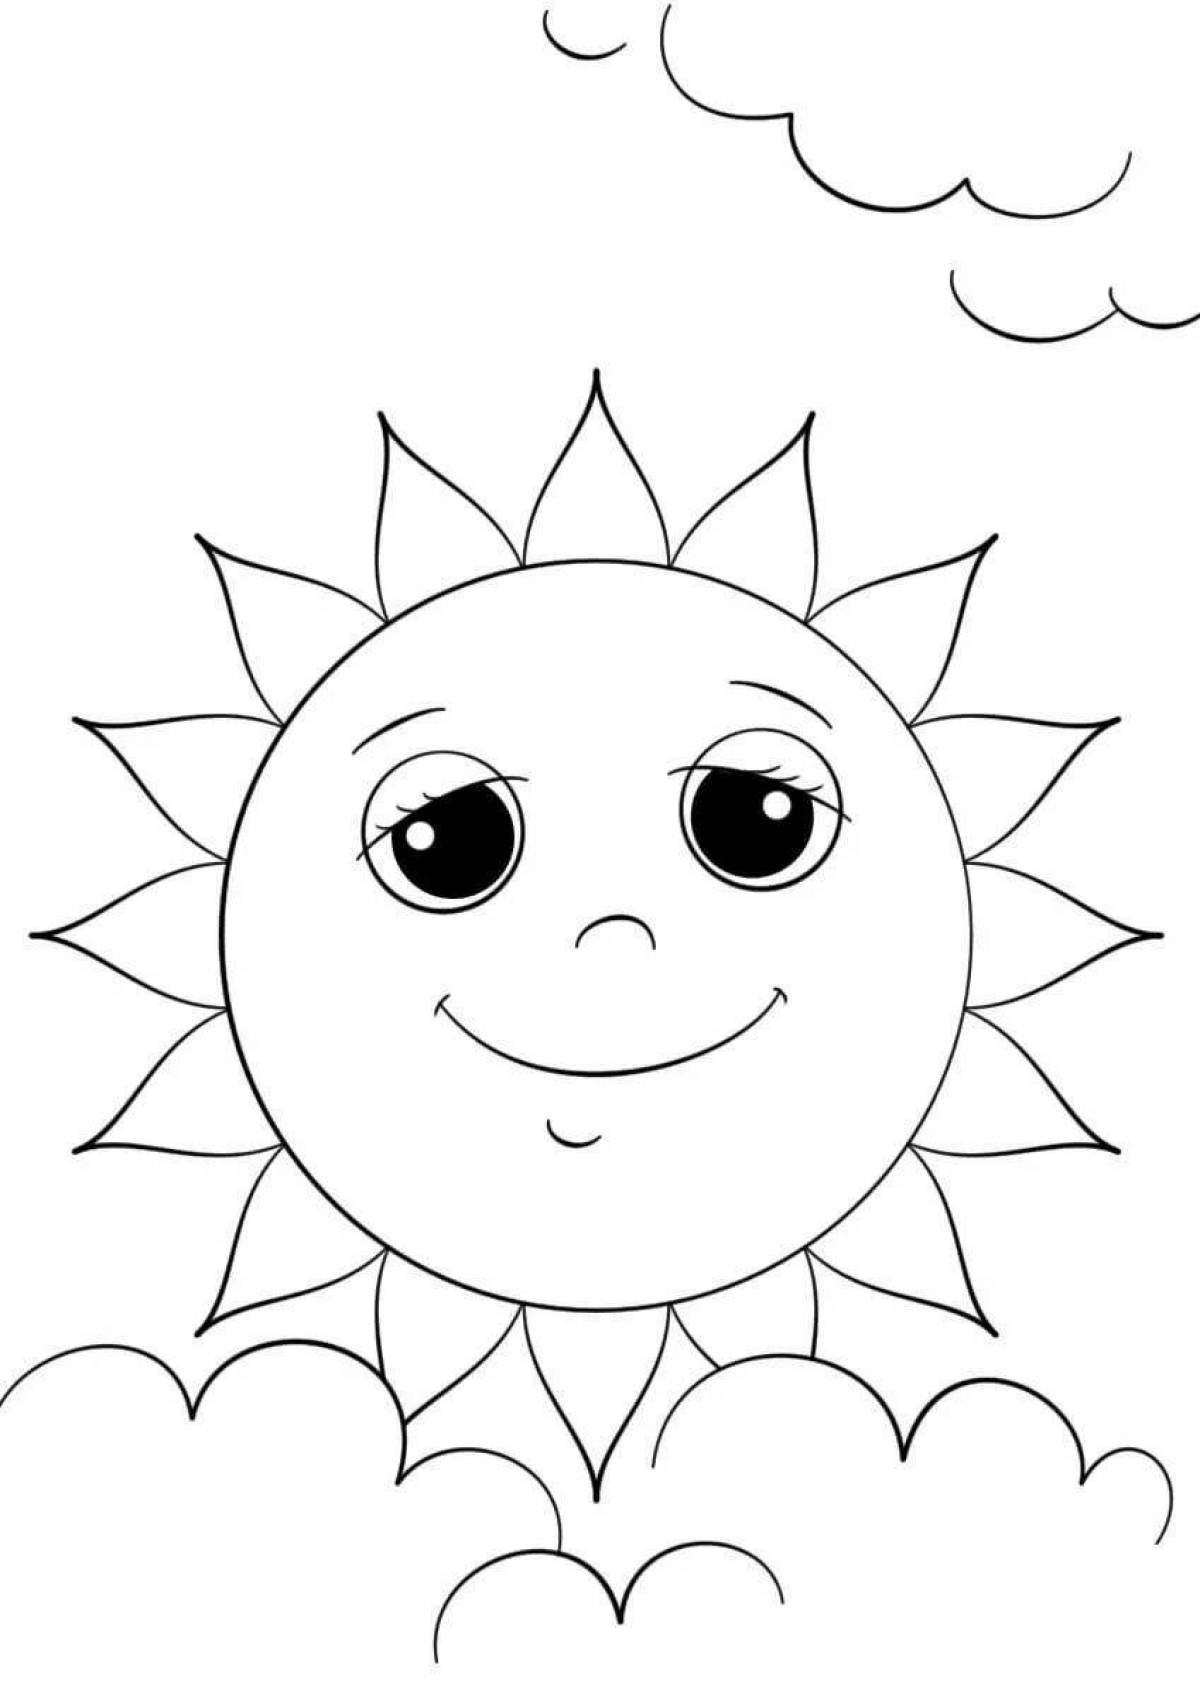 Волшебная раскраска солнце для детей 4-5 лет